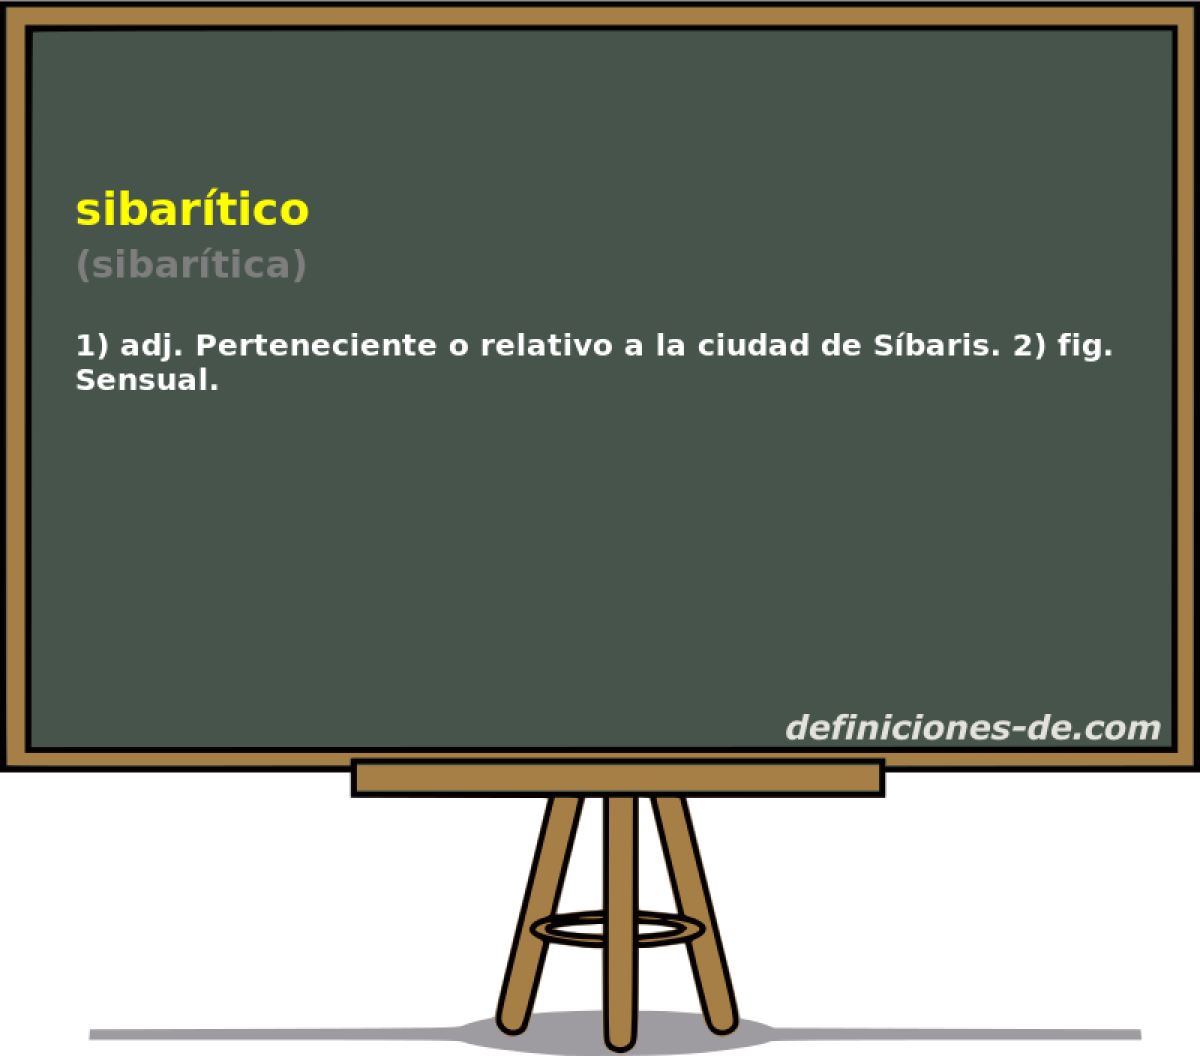 sibartico (sibartica)